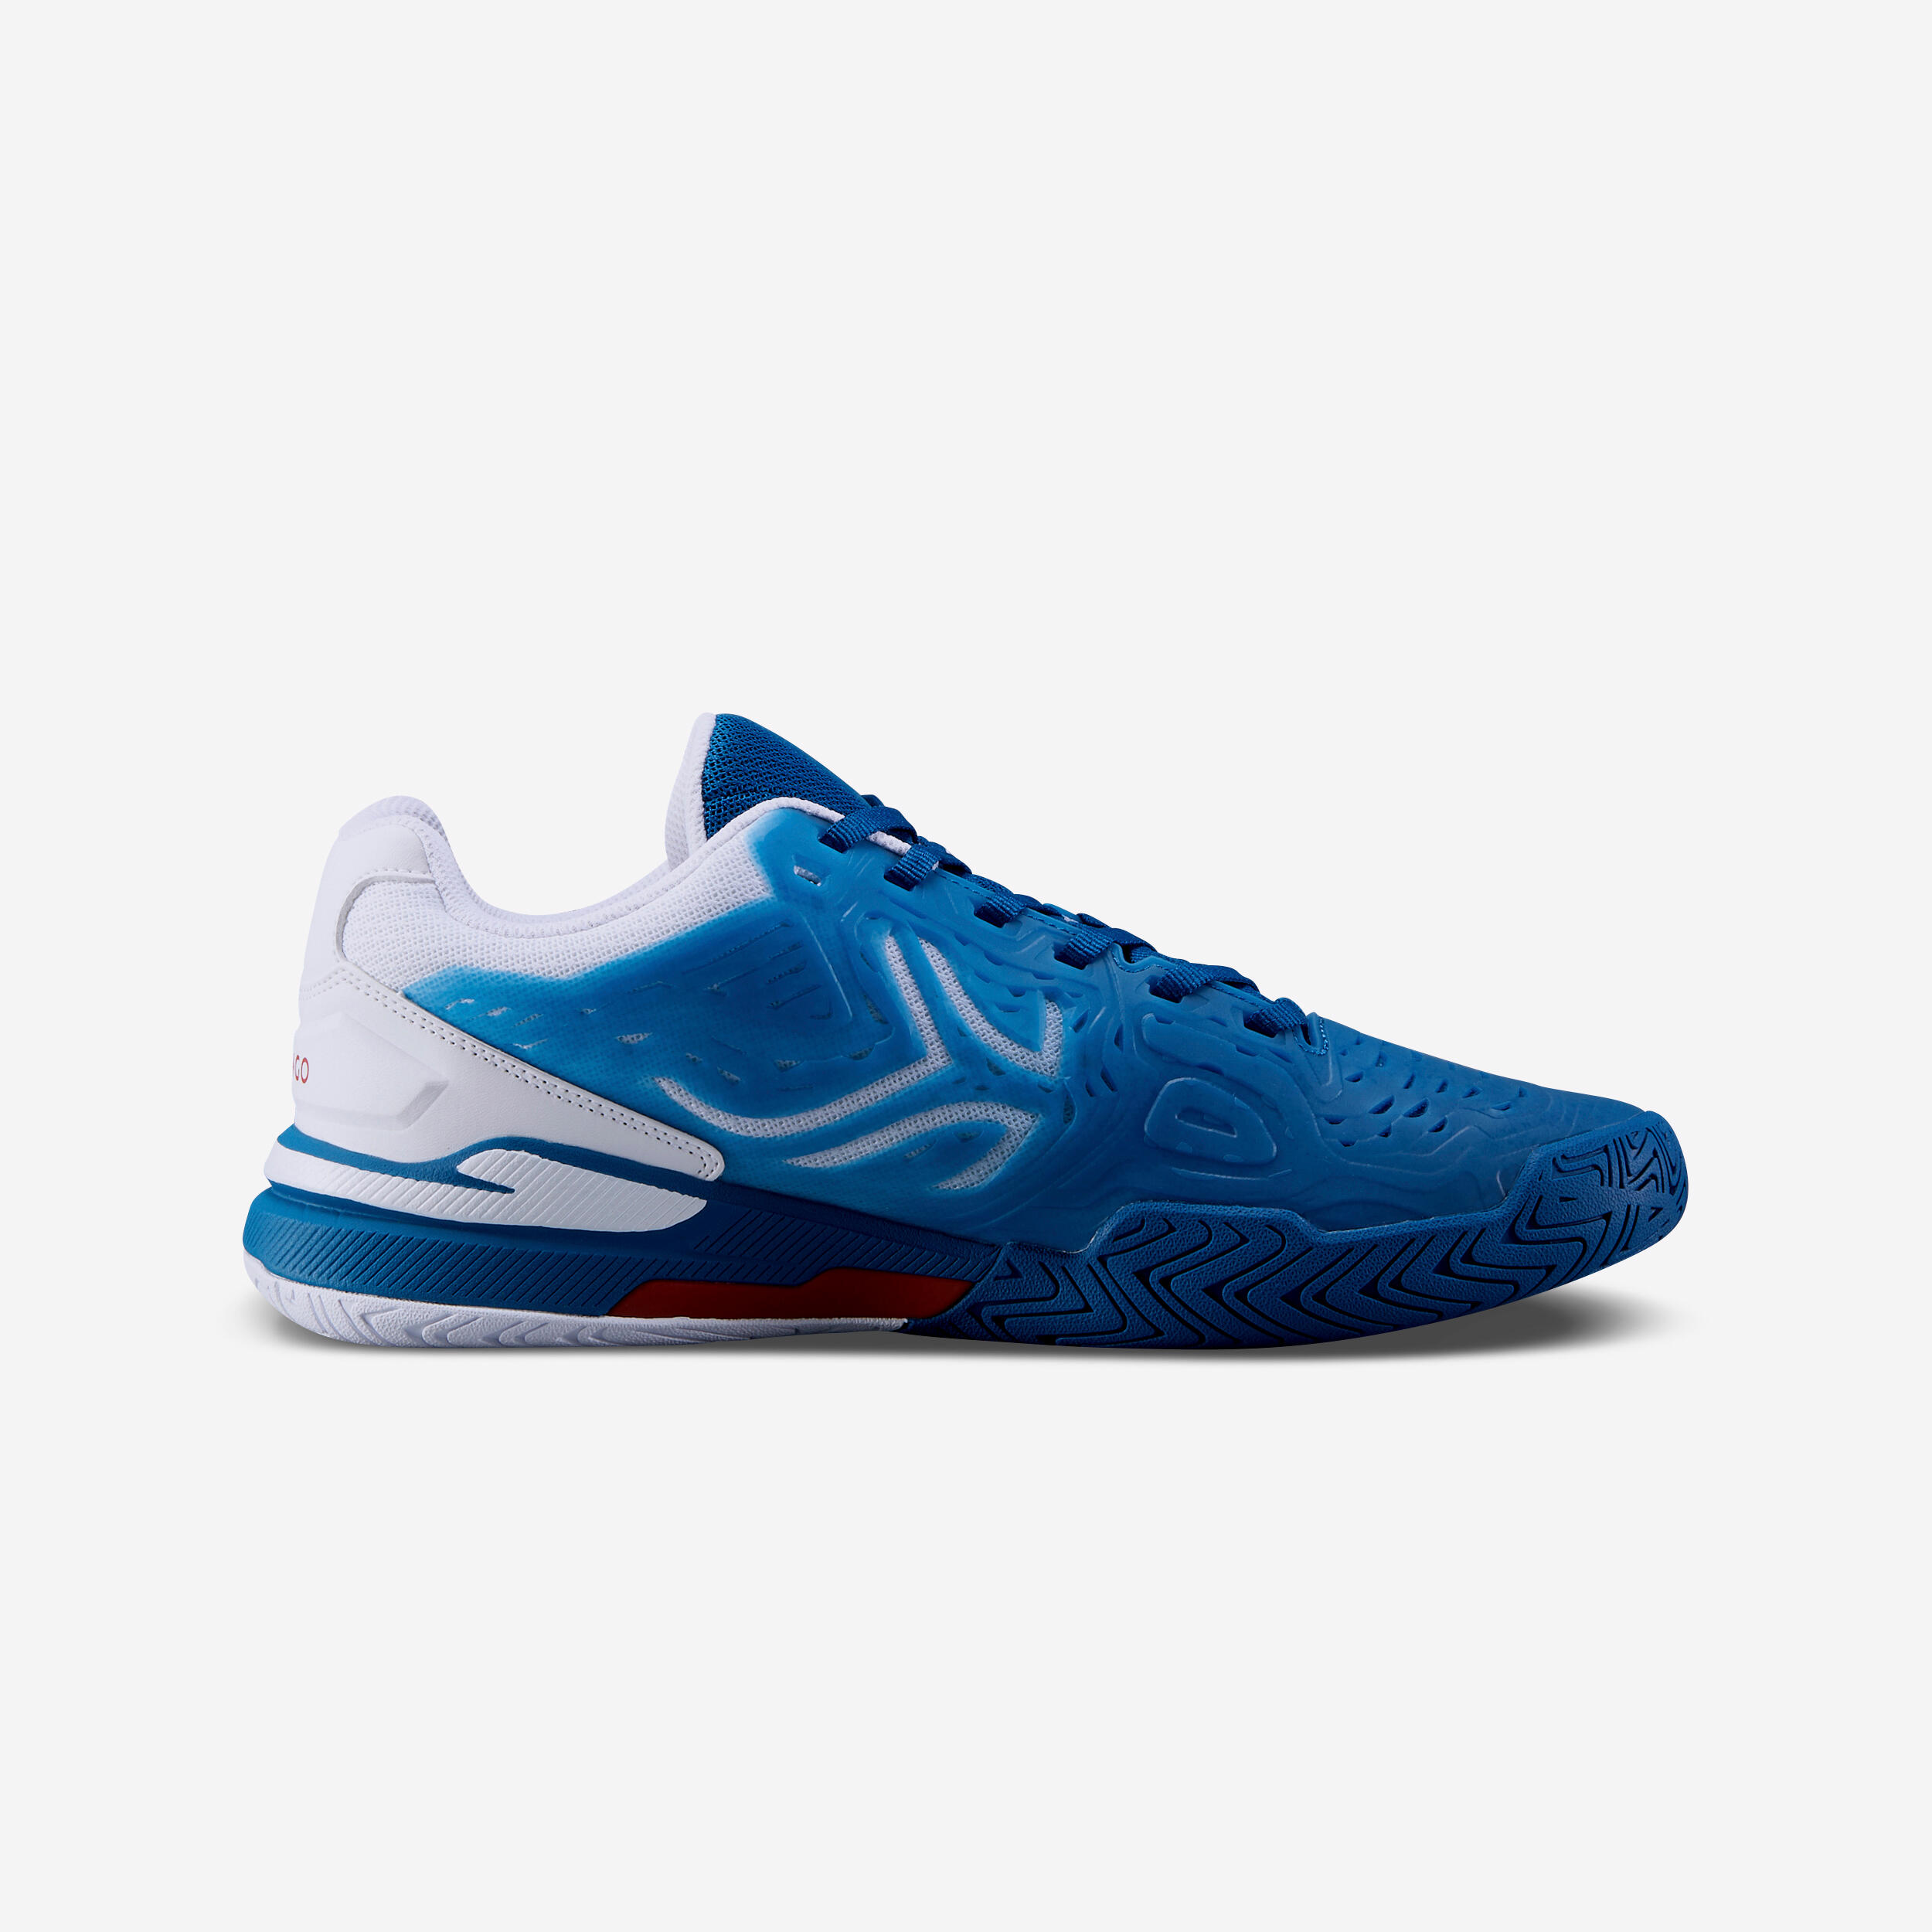 Men's Multicourt Tennis Shoes - TS 560 Blue - ARTENGO